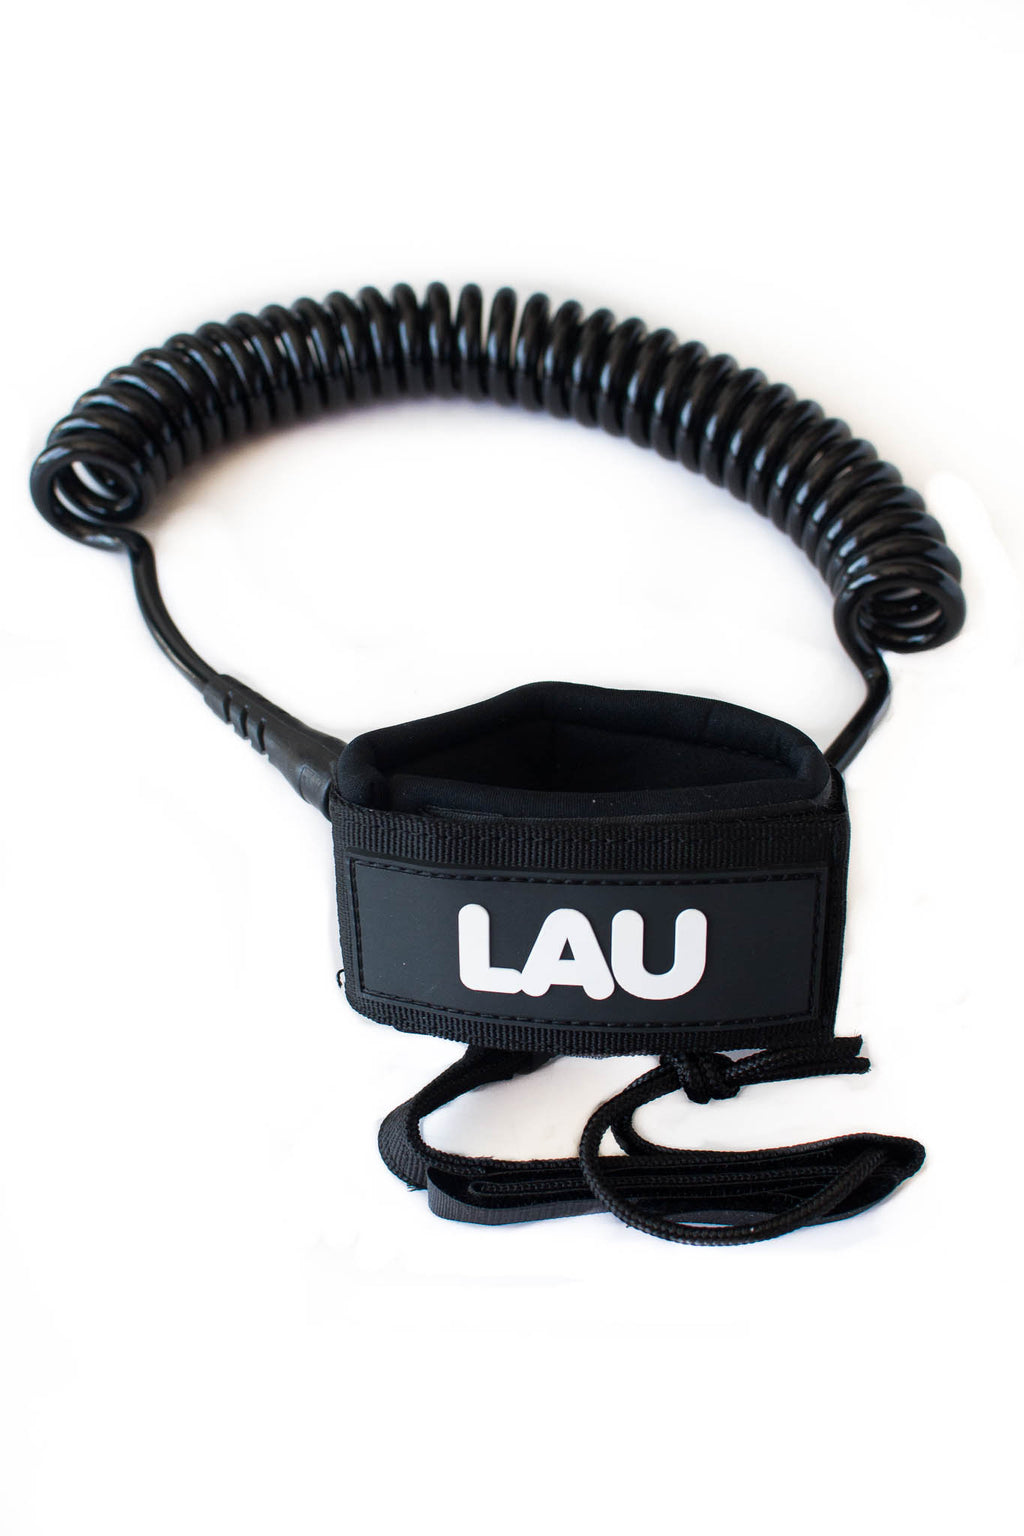 Laisse style leash coil